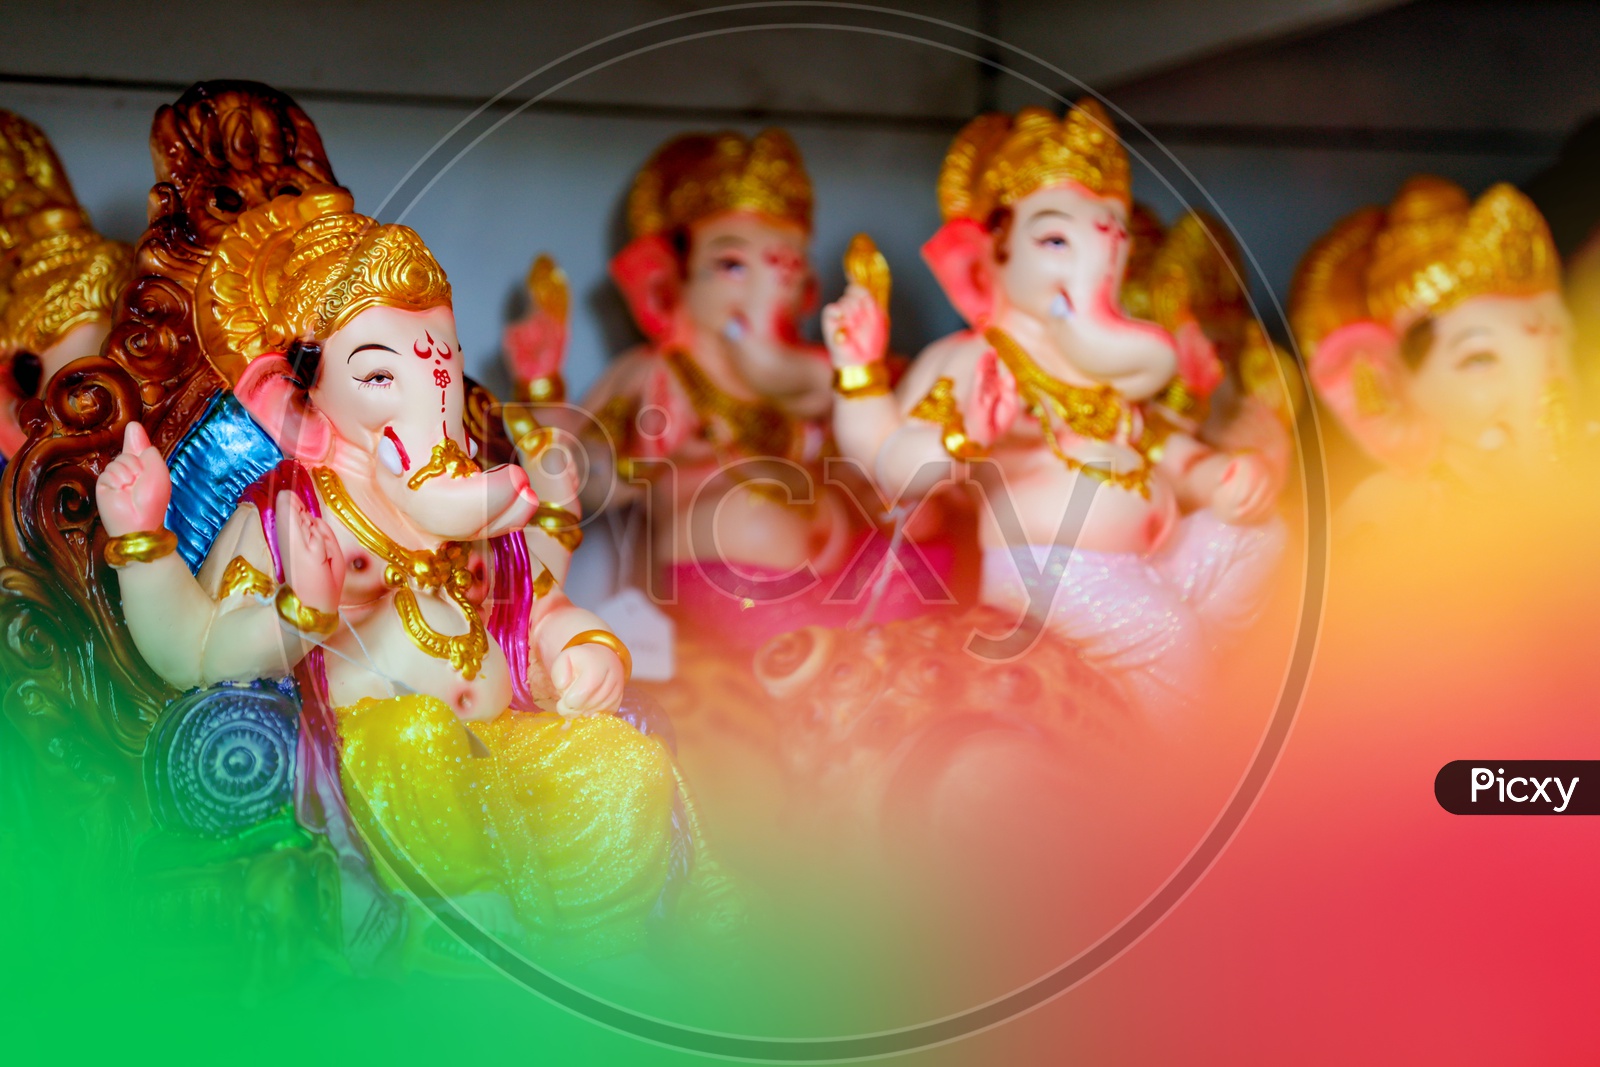 Lord Ganesh Idol / Ganesha Idols placed in a sequence